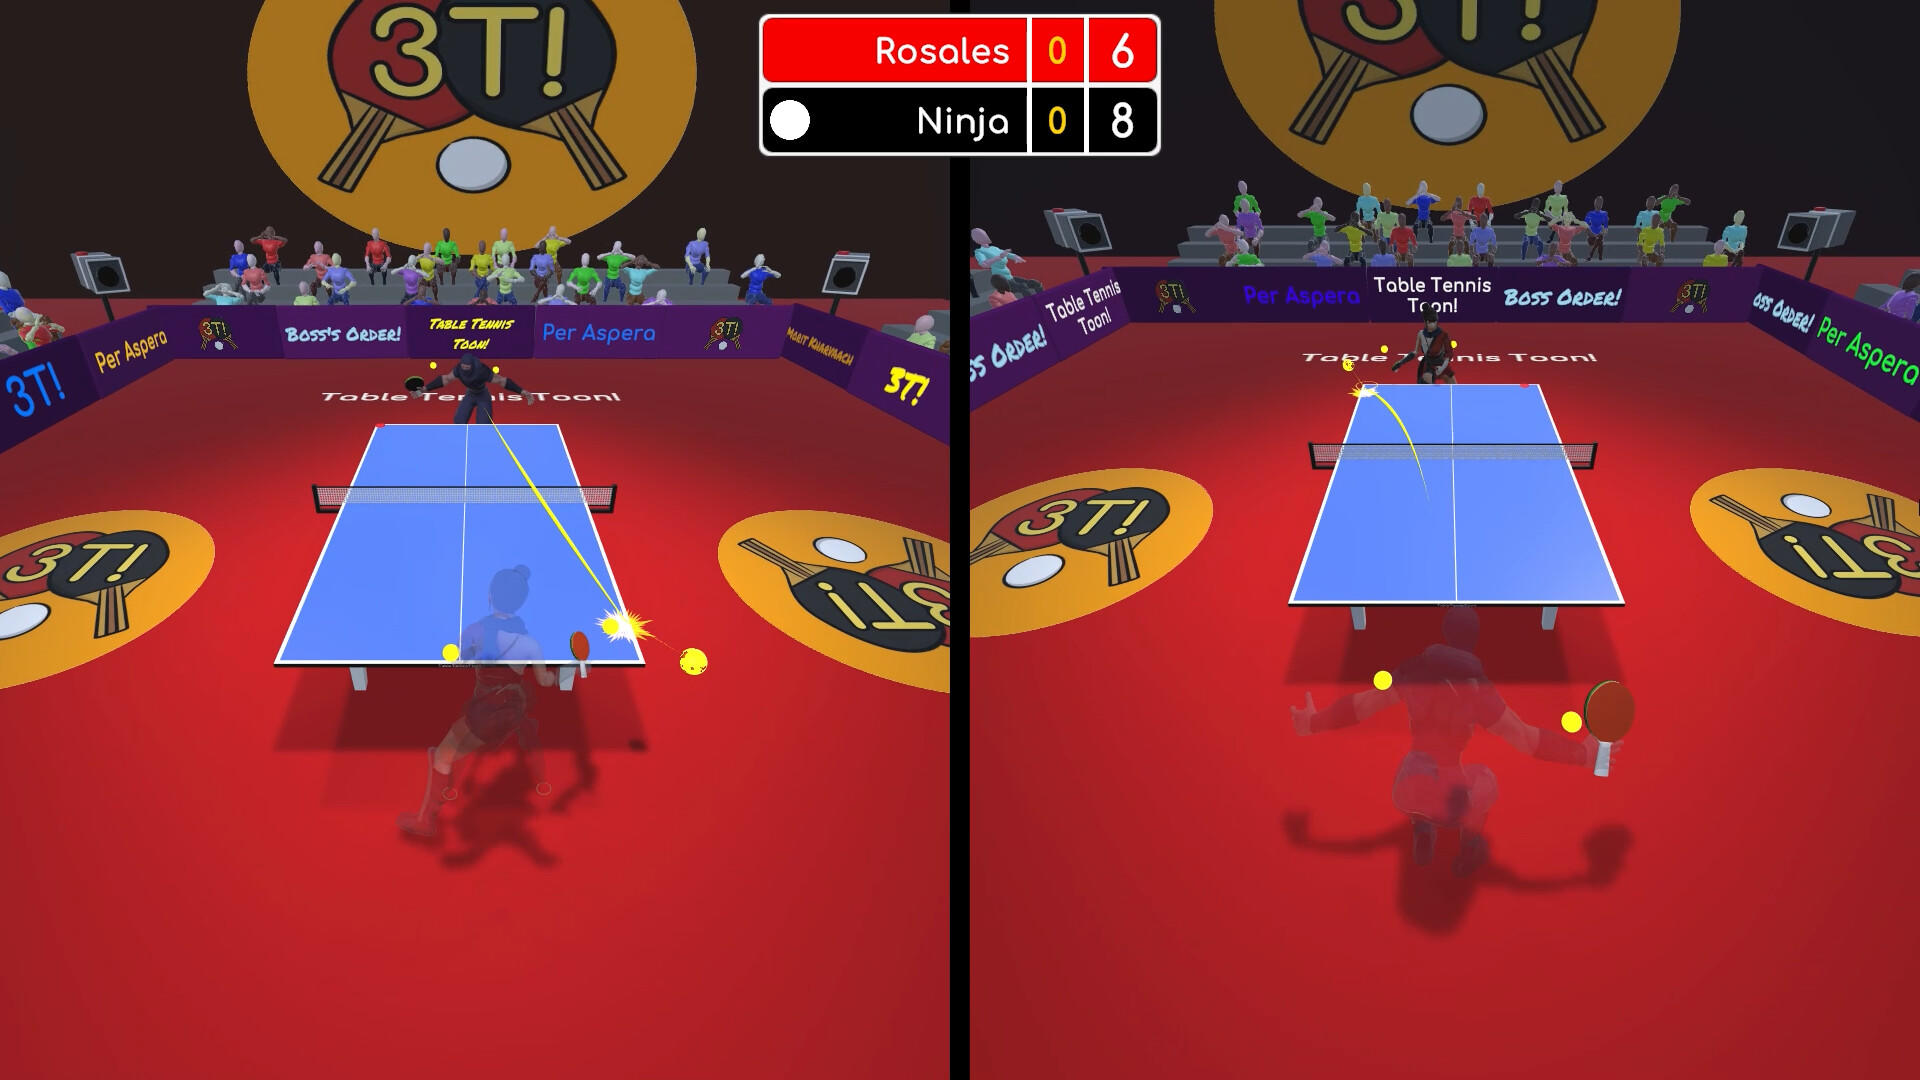 Table Tennis Toon! screenshot game